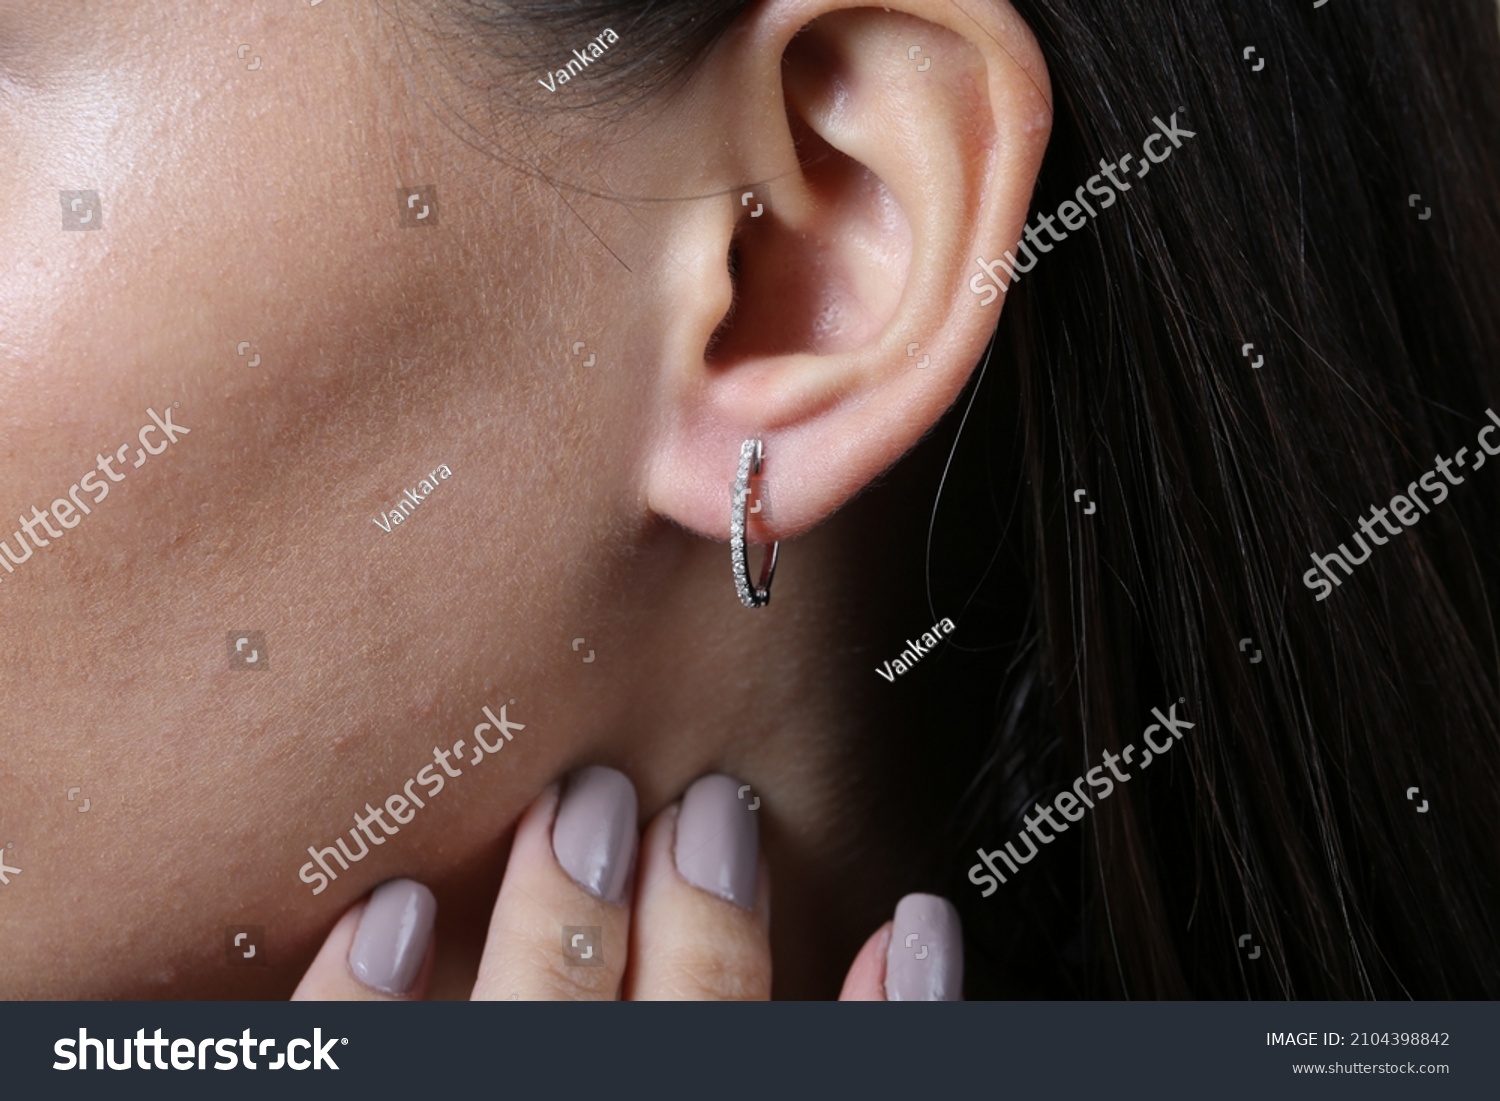 Jewelry, earrings in a beautiful girl's ear, women's accessories, gold earrings, earrings with stones, special diamonds #2104398842